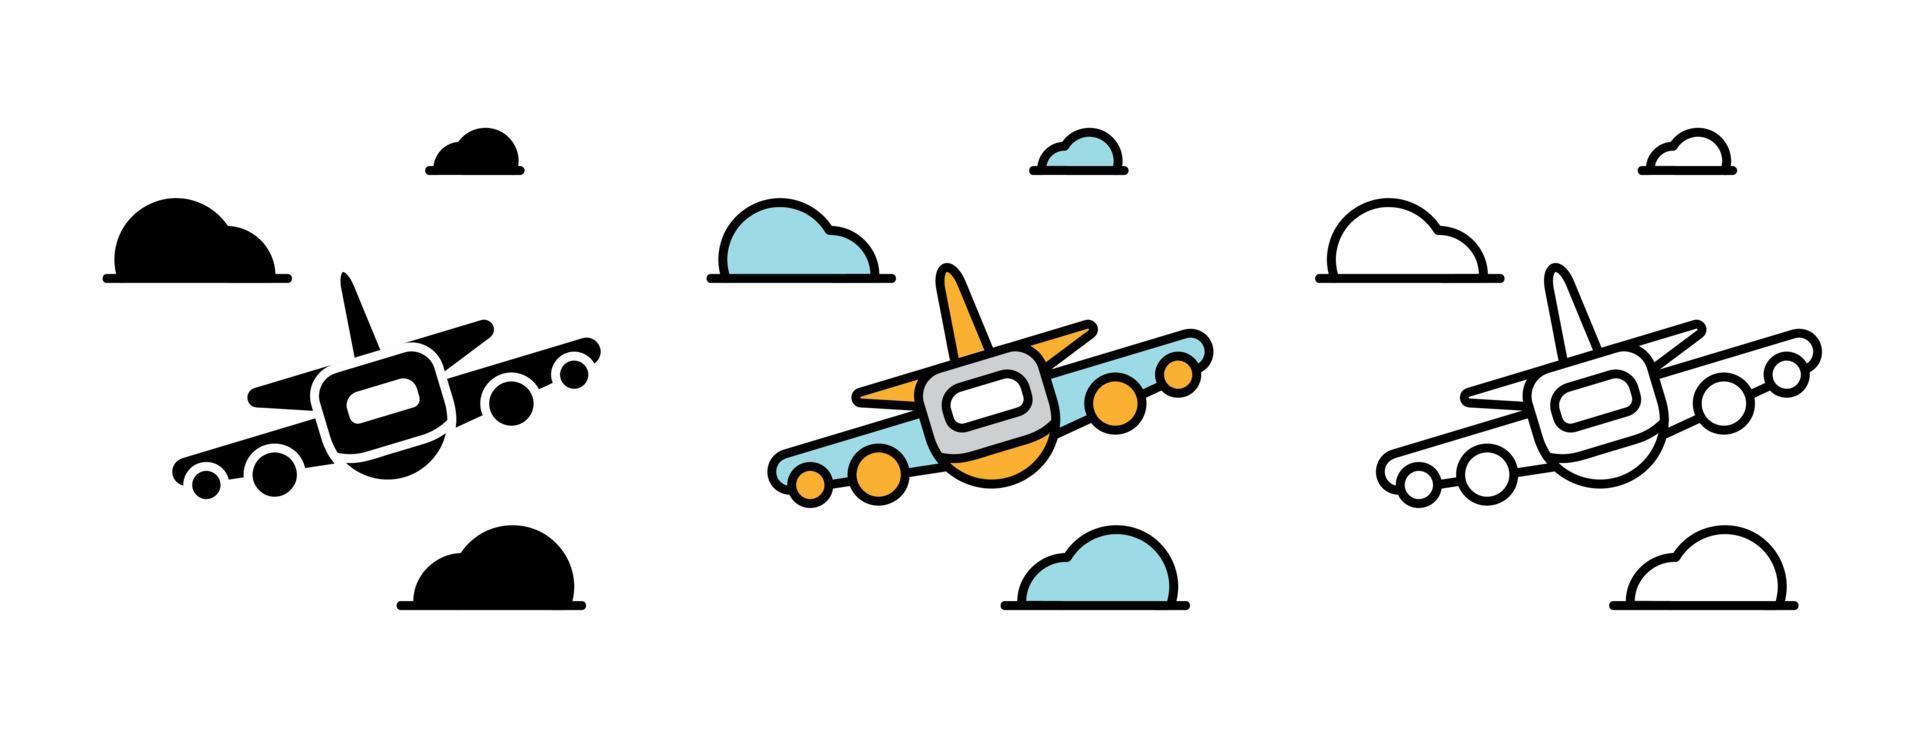 flygplan ikonuppsättning. flygplan framsidan skiss uppsättning bland moln. vektor